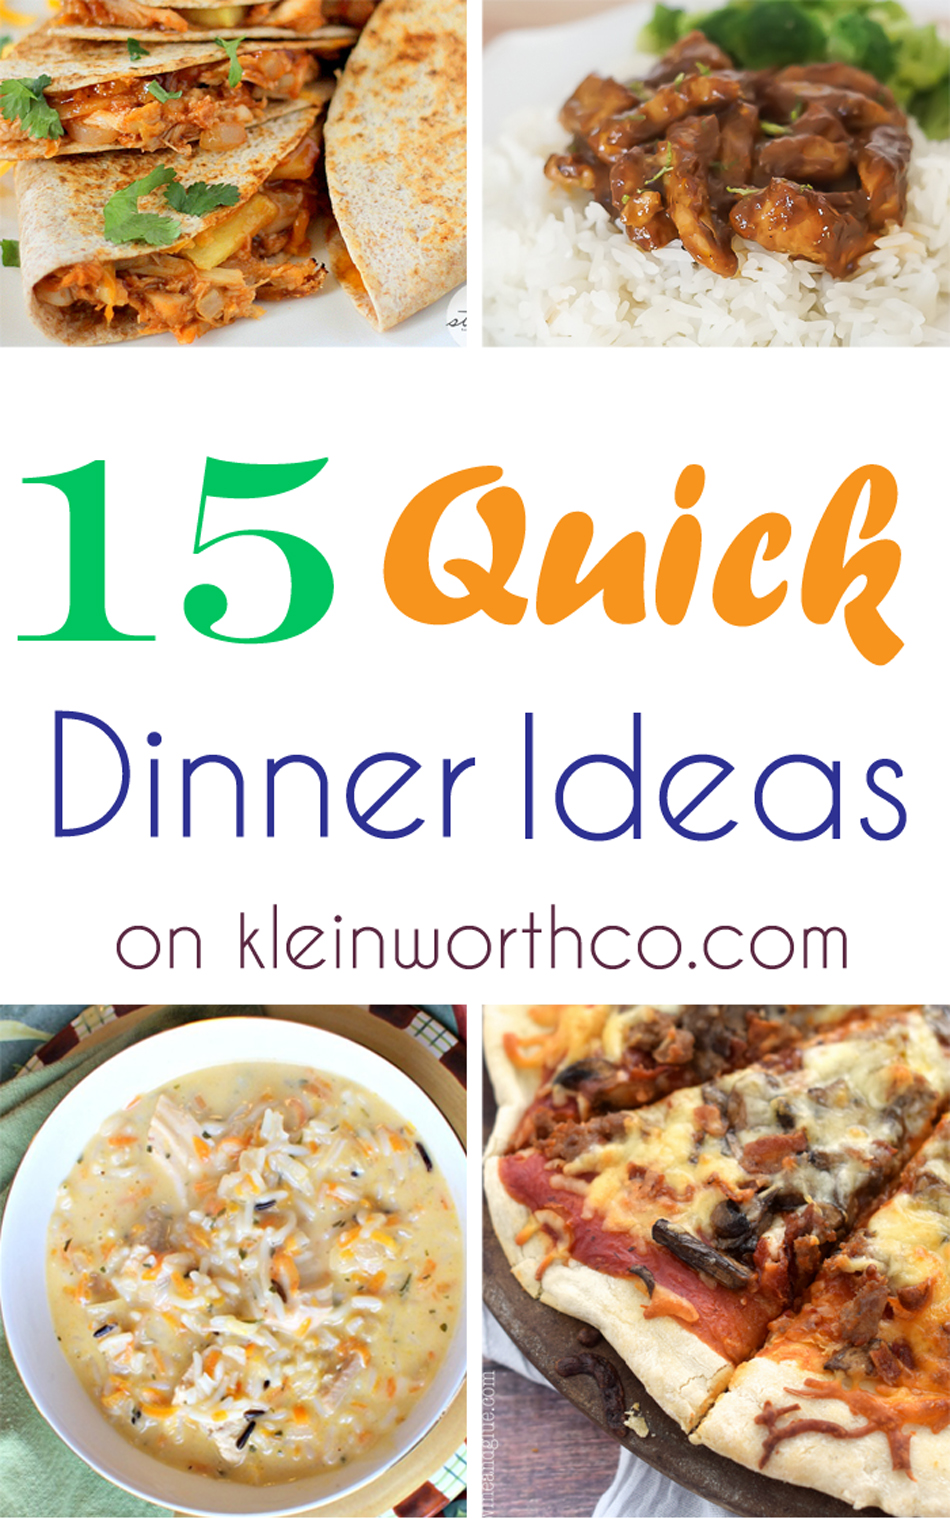 15 Quick Dinner Ideas : Easy Family Dinner Ideas - Kleinworth & Co